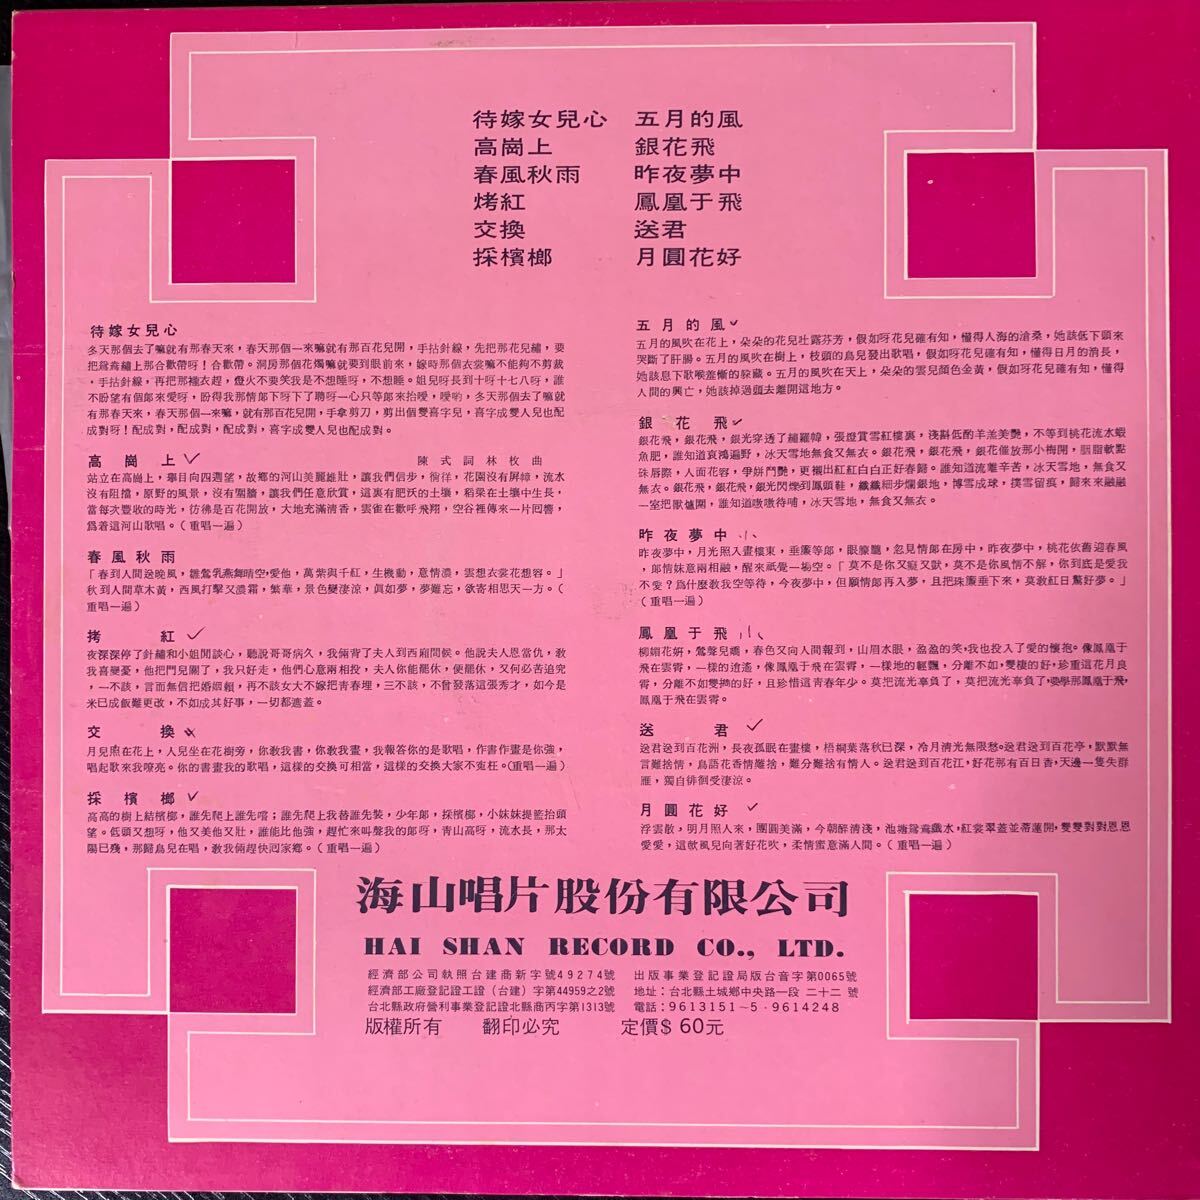 海山唱片 Haishan Records LS4047 レコード Vinyl 台湾盤 Taiwan 台灣の画像2